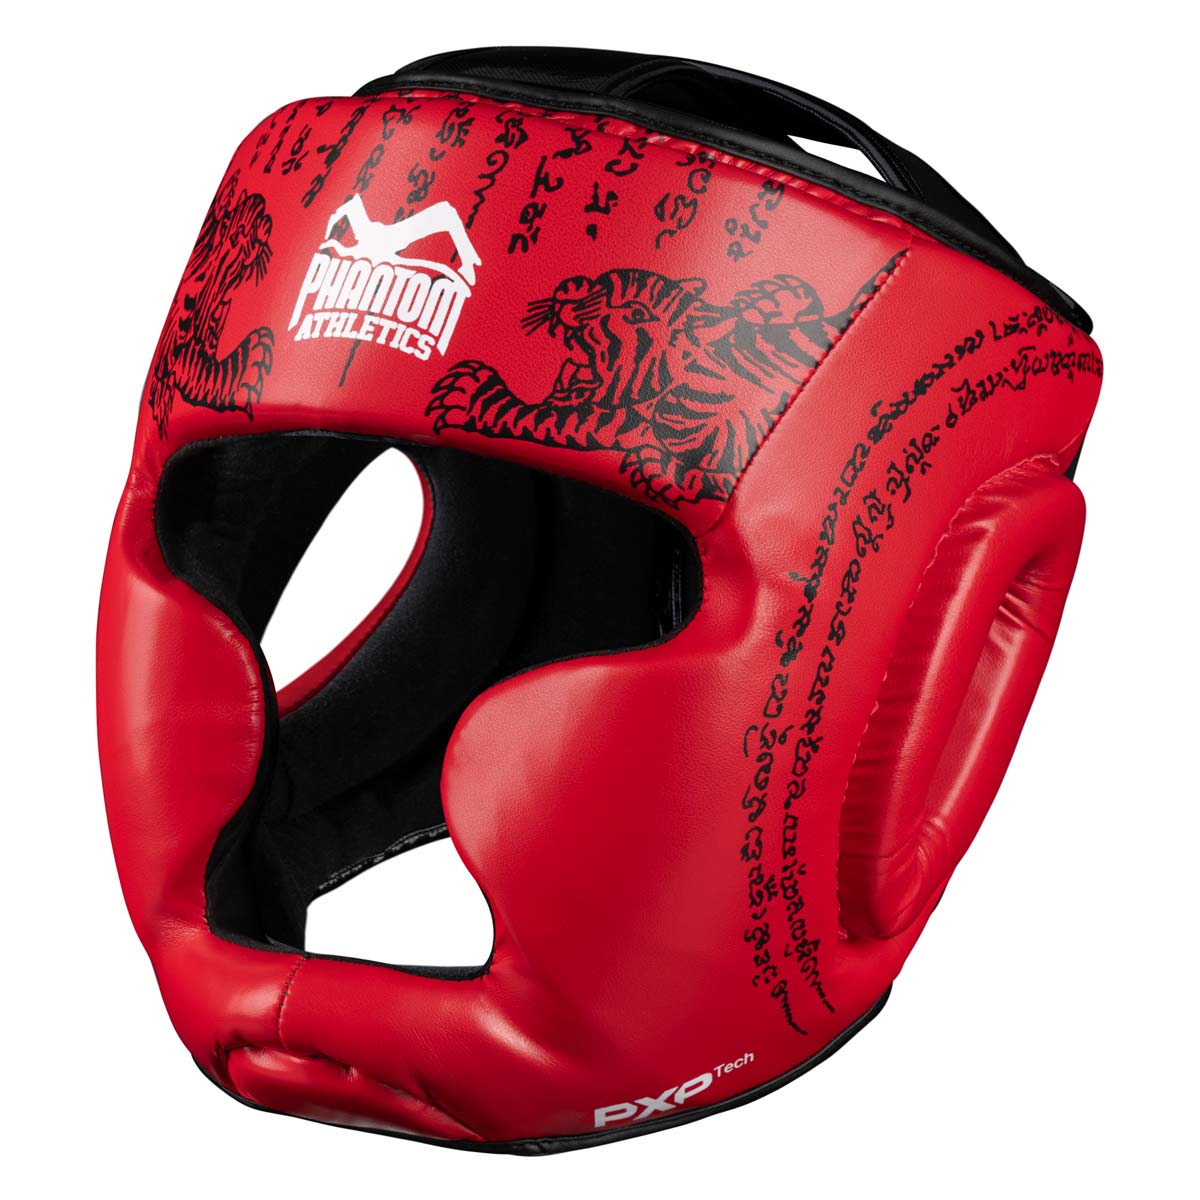 Phantom Muay Thai zaštita za glavu za tajlandski boks i MMA sparinge, natjecanja i treninge. U tradicionalnom Sak Yant dizajnu i crvenoj boji.